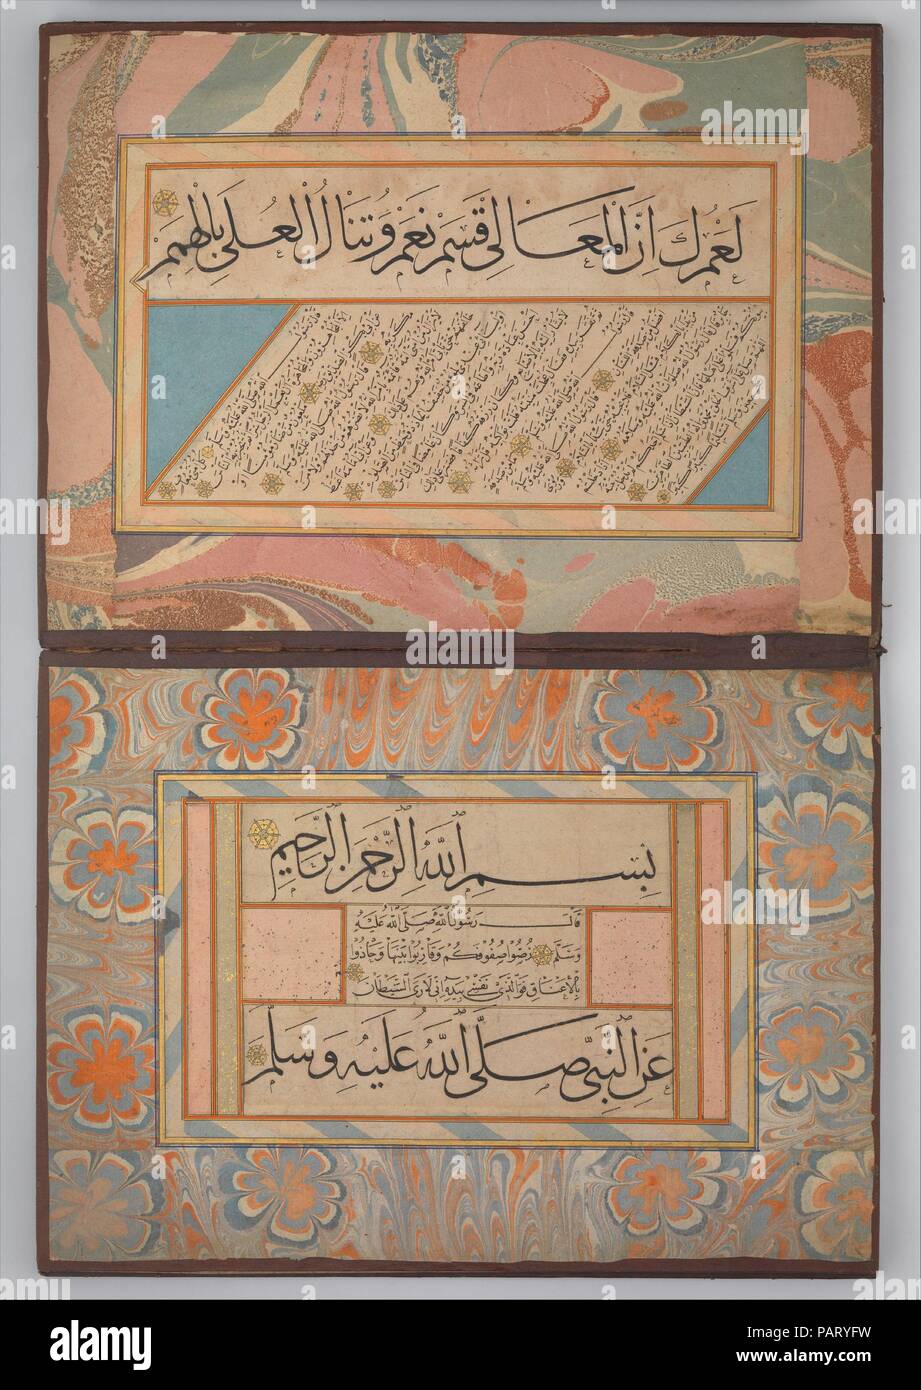 Album de calligraphies dont la poésie et les traditions prophétiques (Hadiths). Calligraphe : Cheikh Hamdullah ibn Mustafa Dede (d. 1520). Dimensions : Ht. 12 5/8 in. (32,1 cm) W. 9 3/8 in. (23,8 cm). Date : ca. 1500. Cet album contient des échantillons écrit par Cheikh Hamdullah, le plus célèbre calligraphe ottomane. Le texte vient de l'Hadith, la compilation du prophète Muhammad's paroles et actes qui est une source importante pour l'orientation morale et juridique dans la tradition islamique. Sur chaque page, plusieurs lignes d'un petit script (naskh) sont encadrées par une ou deux lignes dans un plus grand script (thuluth ou muh Banque D'Images